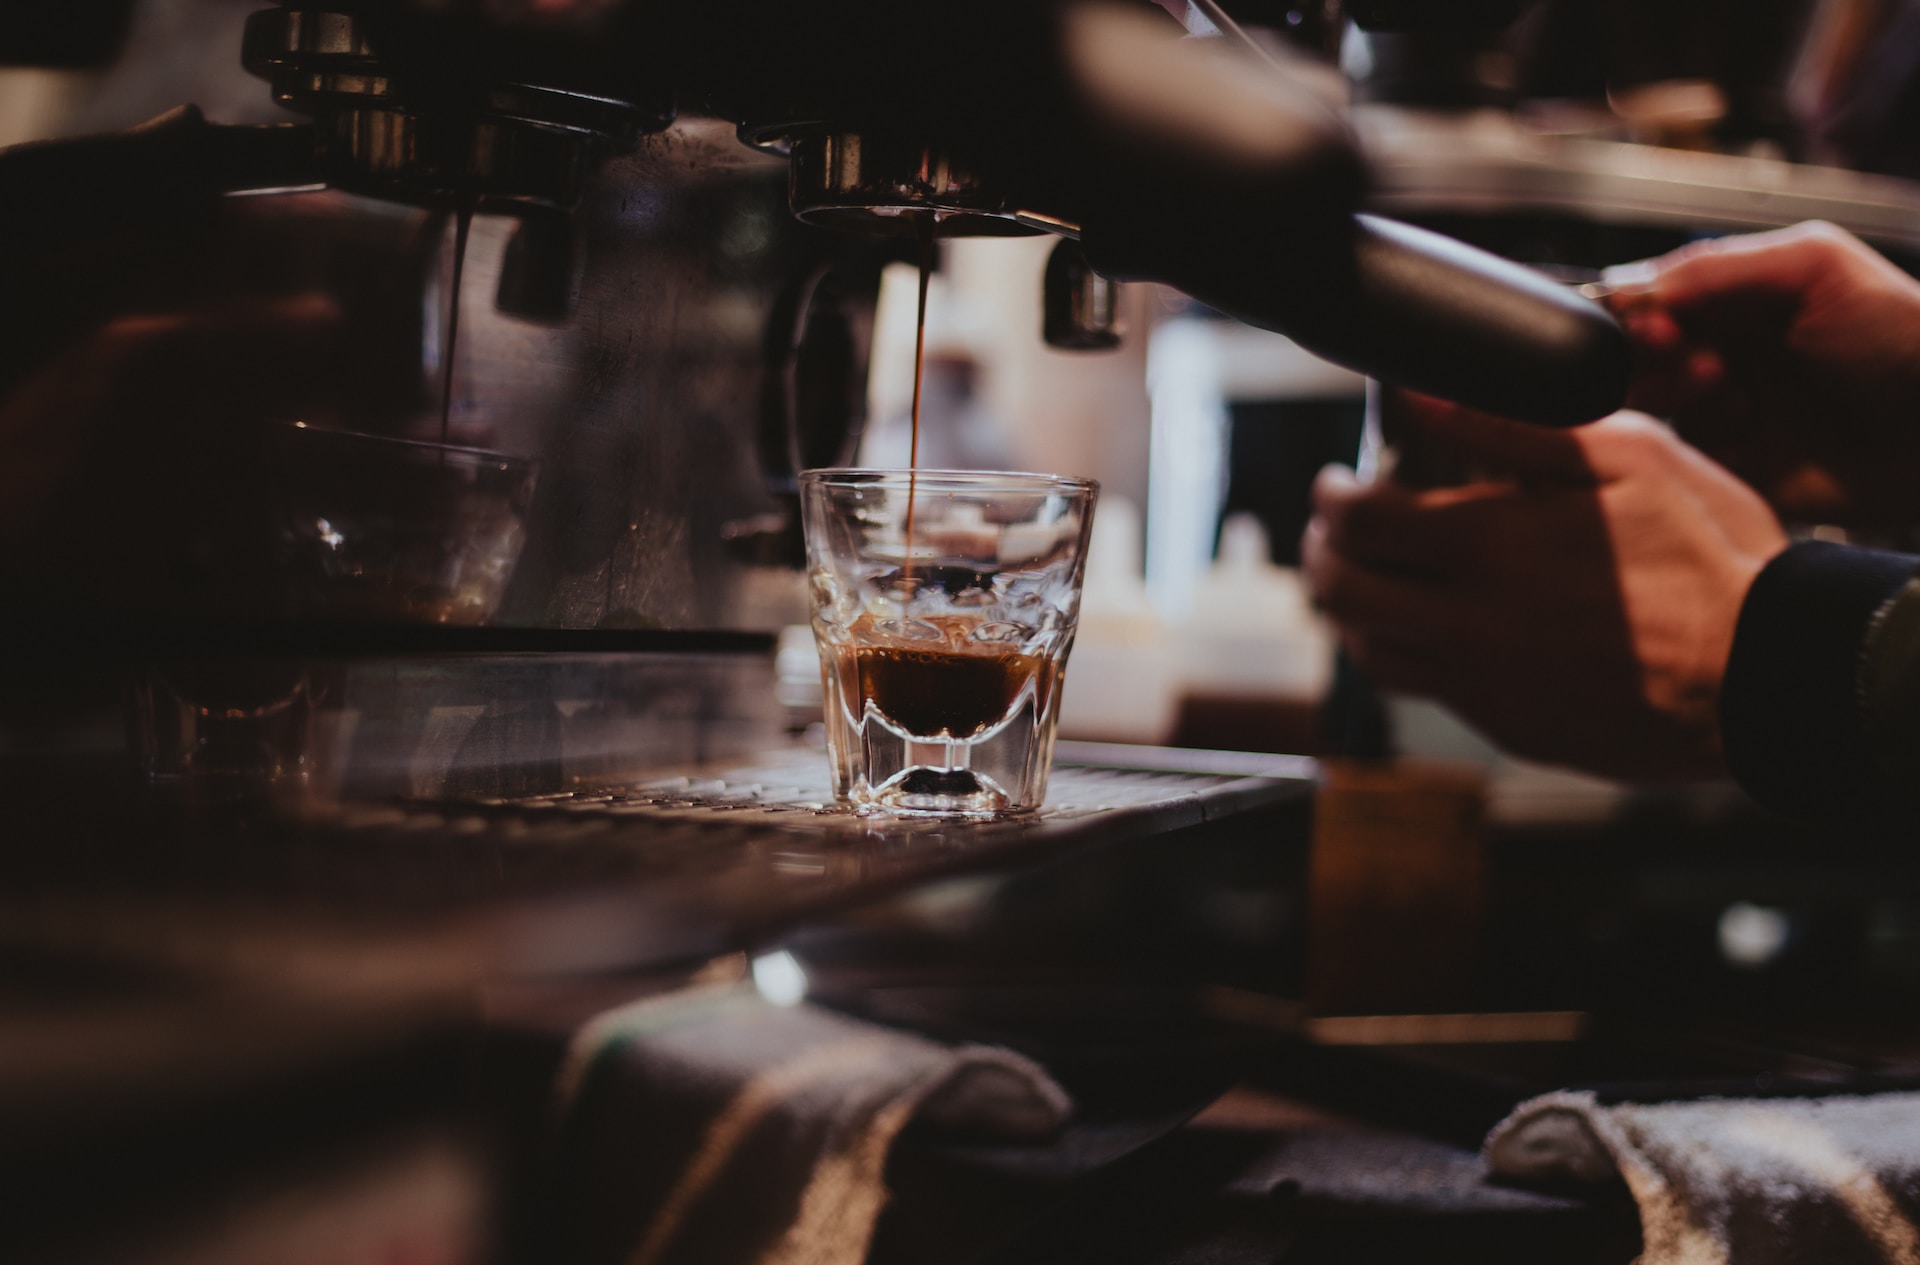 Caffè e salute: 9 cose che forse non sai scientificamente provate